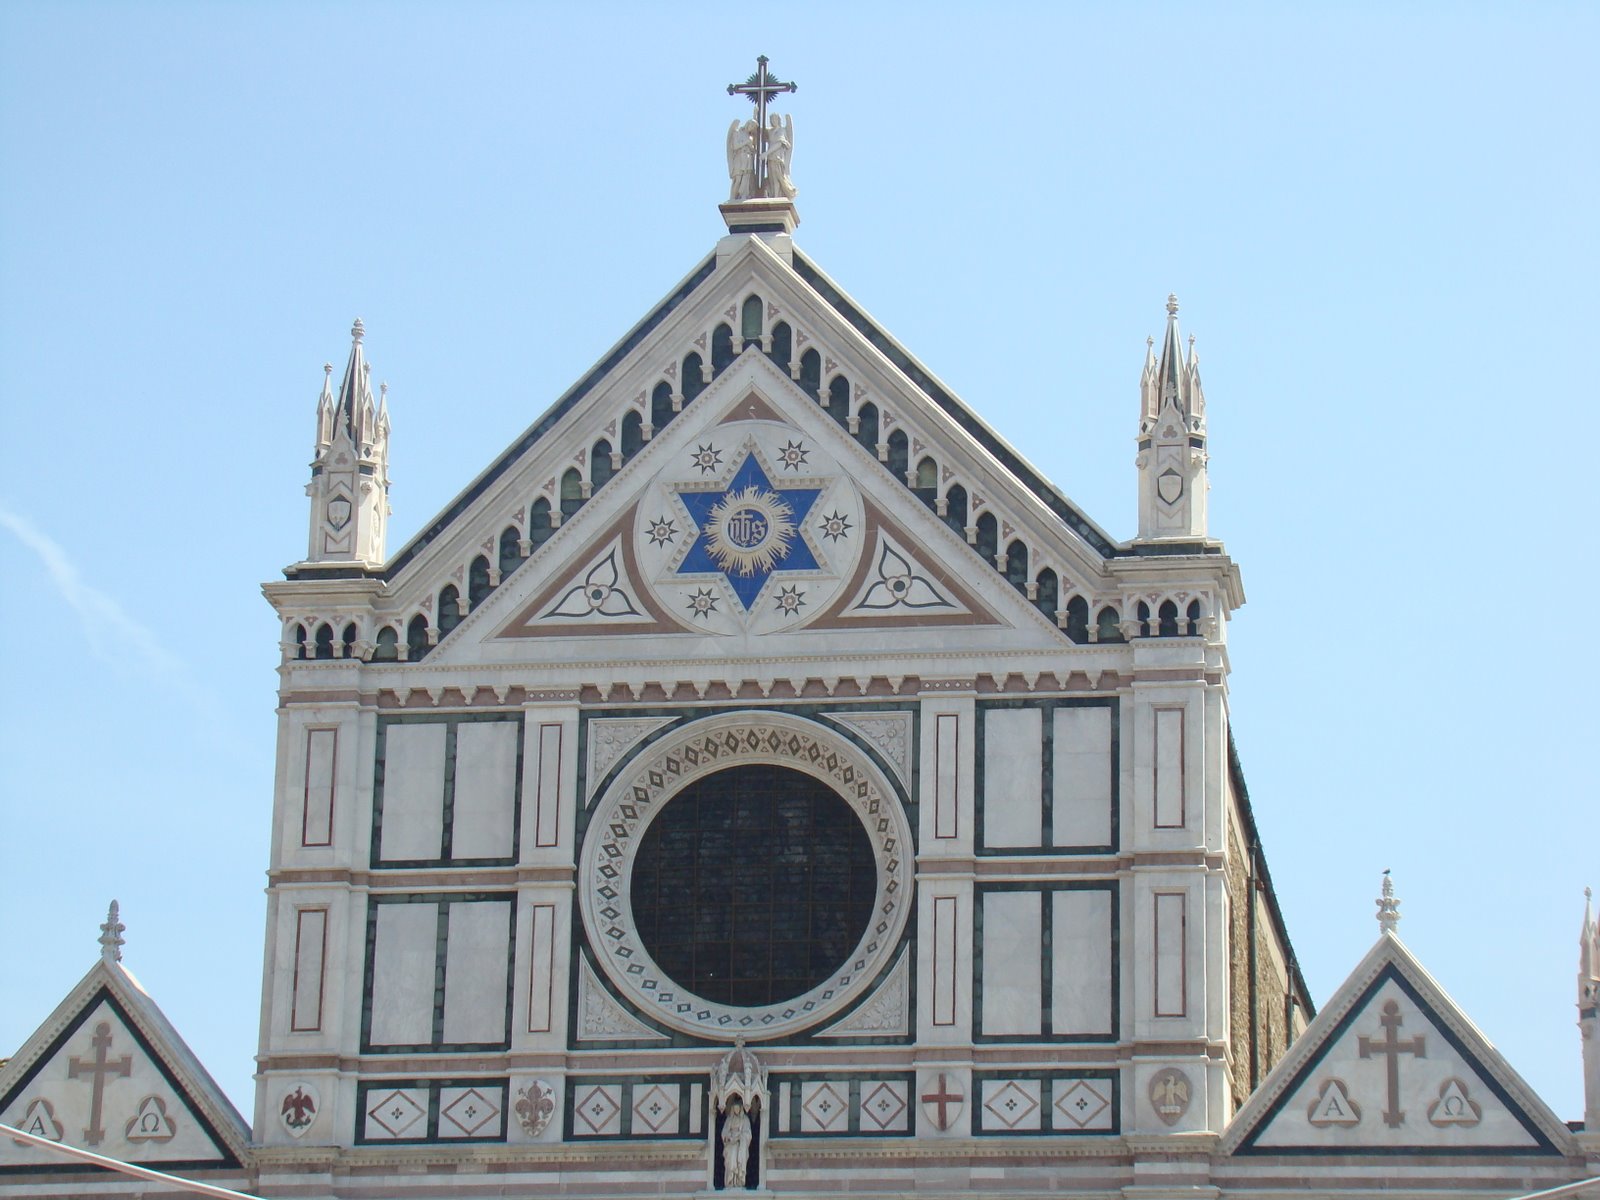 Florencia, Firenze, Italia, Cuna del Renacimiento, Elisa N, Blog de Viajes, Lifestyle, Travel